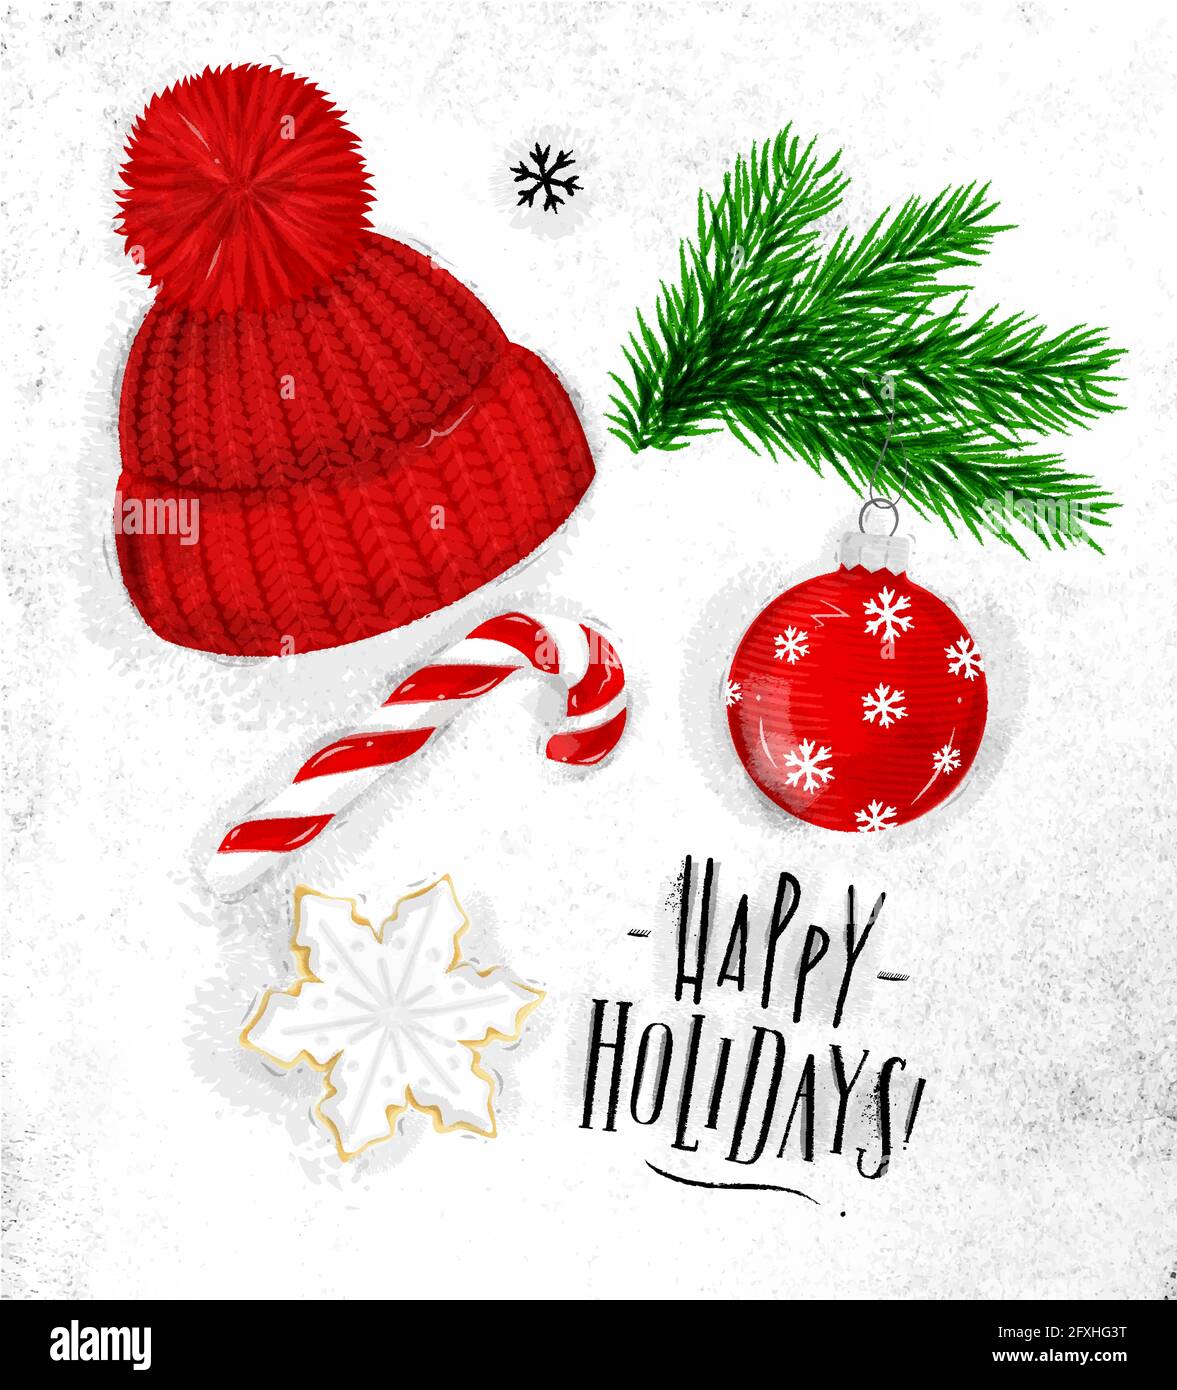 Weihnachtsthema Symbole Keks, Weihnachtsbaum, Dekoration, Hut, Bonbon-Schriftzug frohe Feiertage Zeichnung im Vintage-Stil auf schmutzigem Papier Stock Vektor